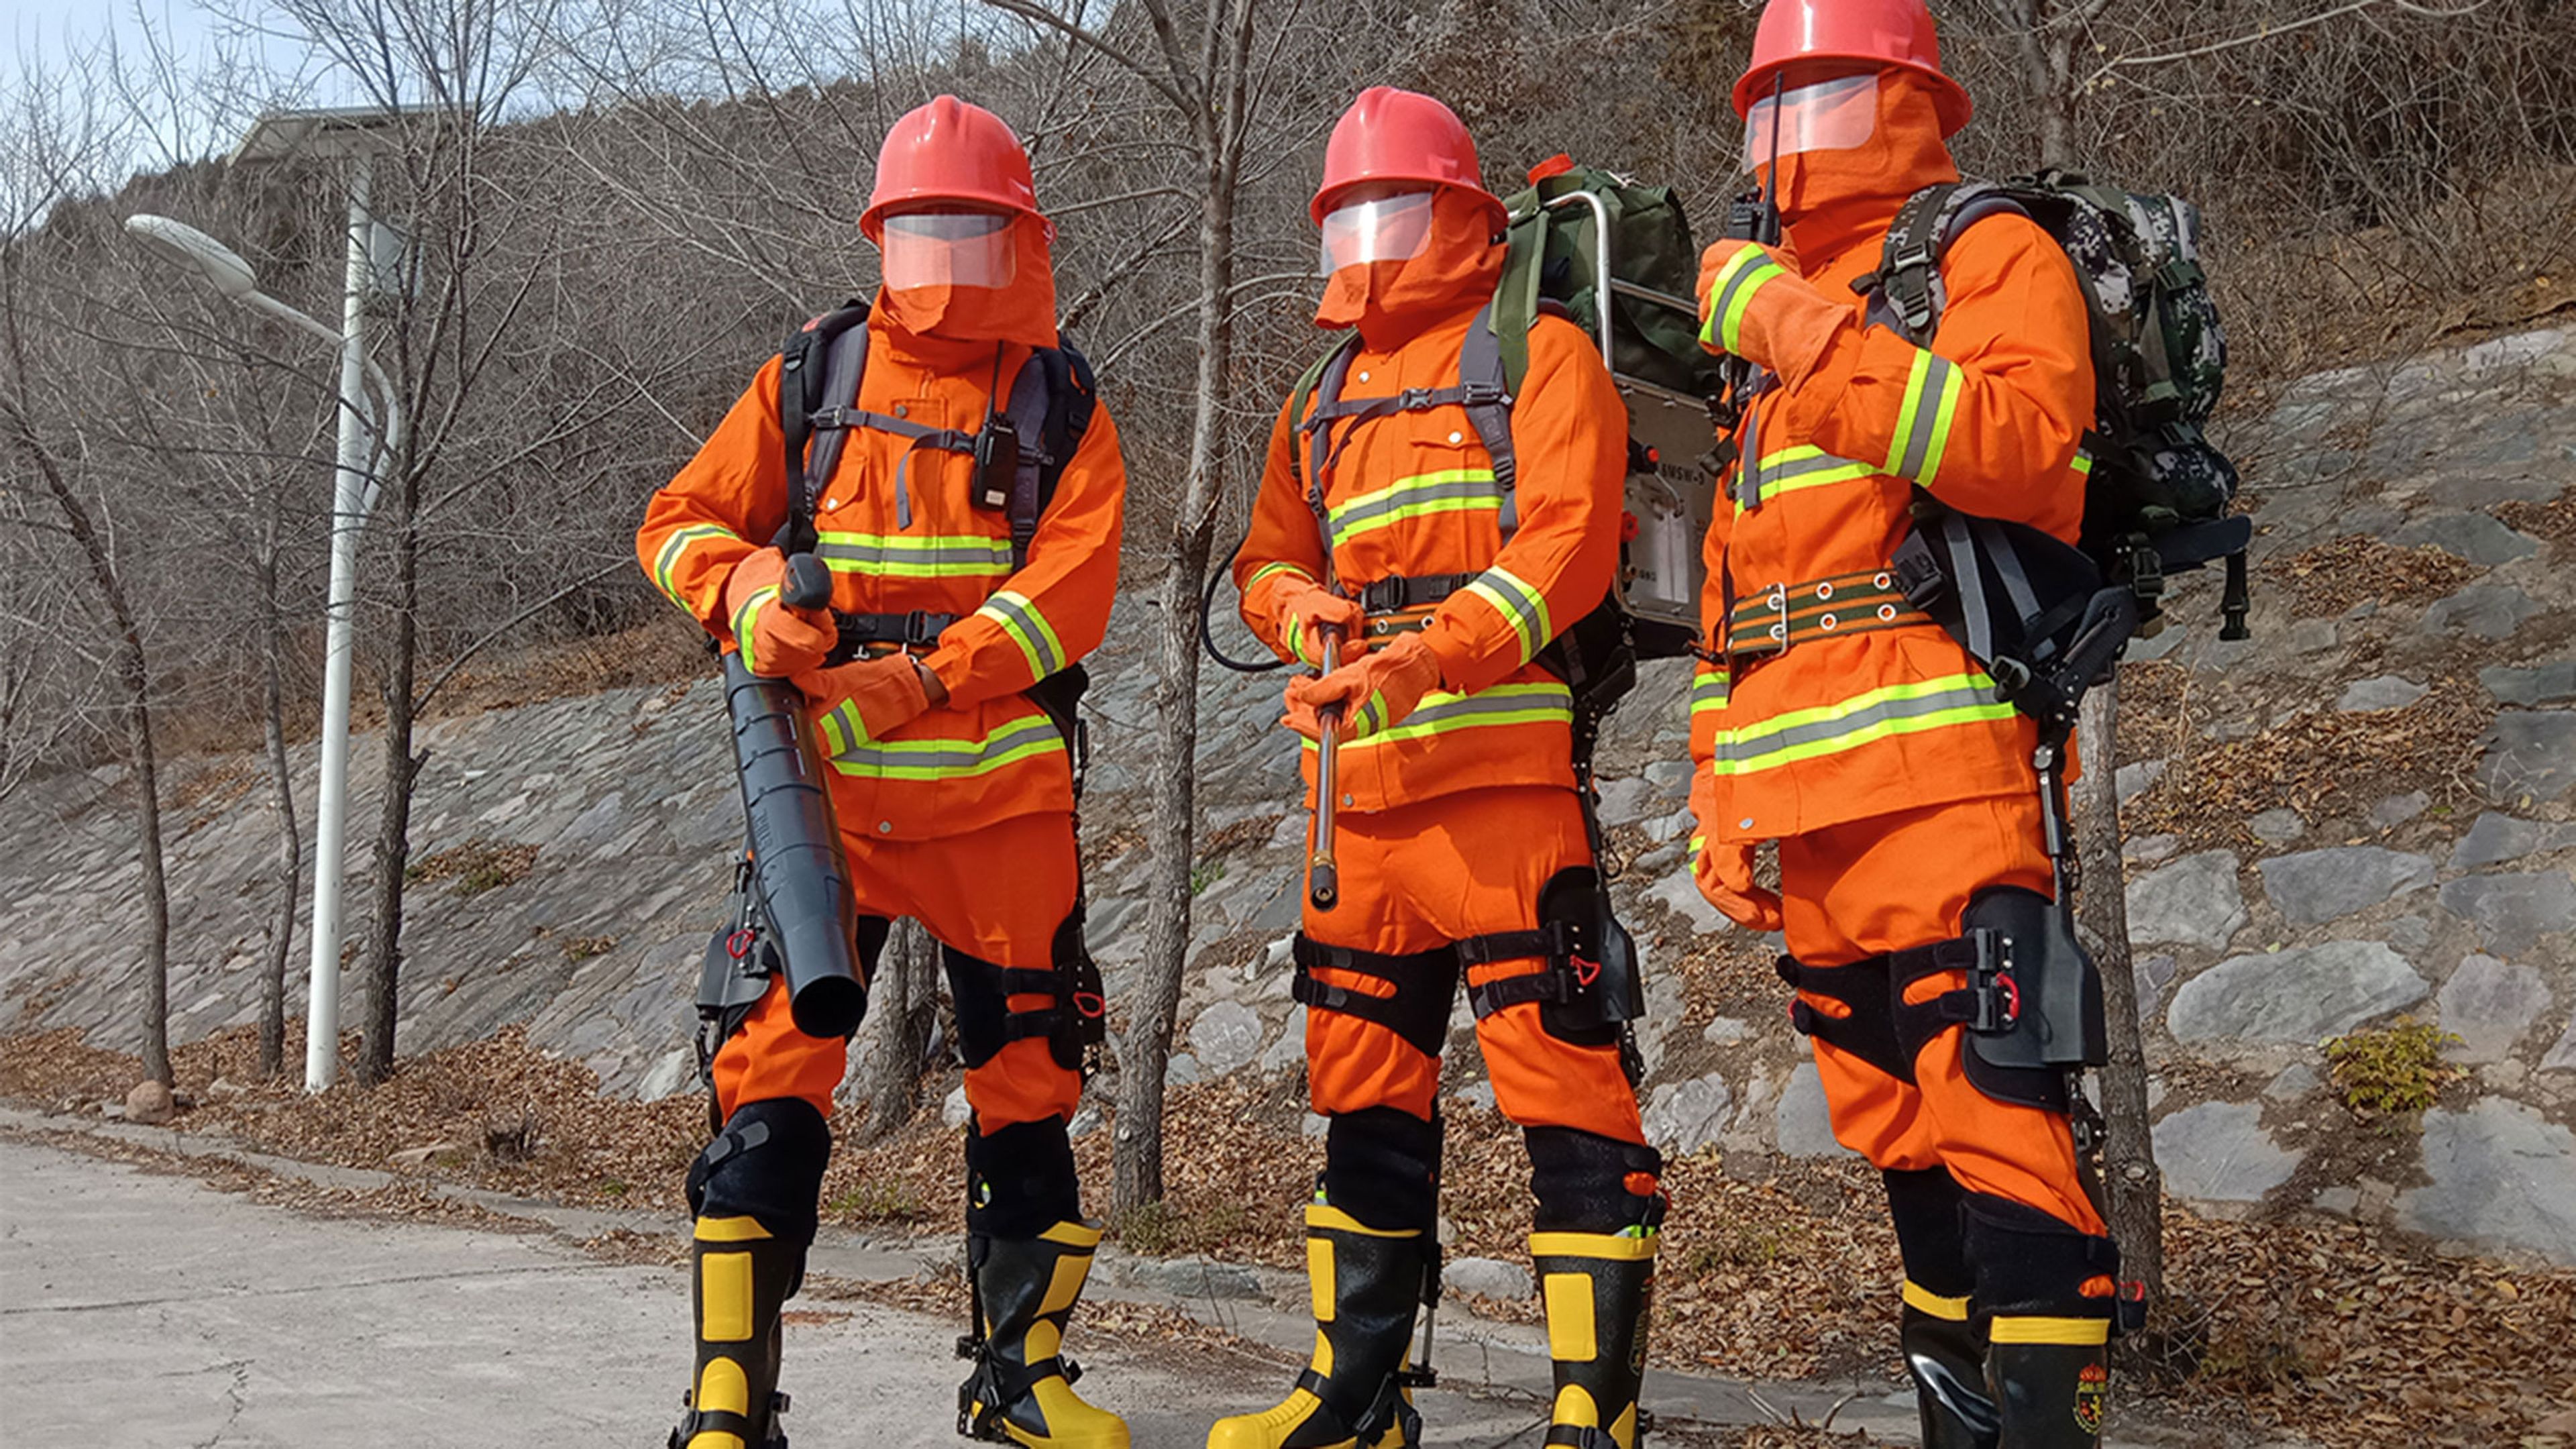 Los bomberos en China ya llevan exosqueletos